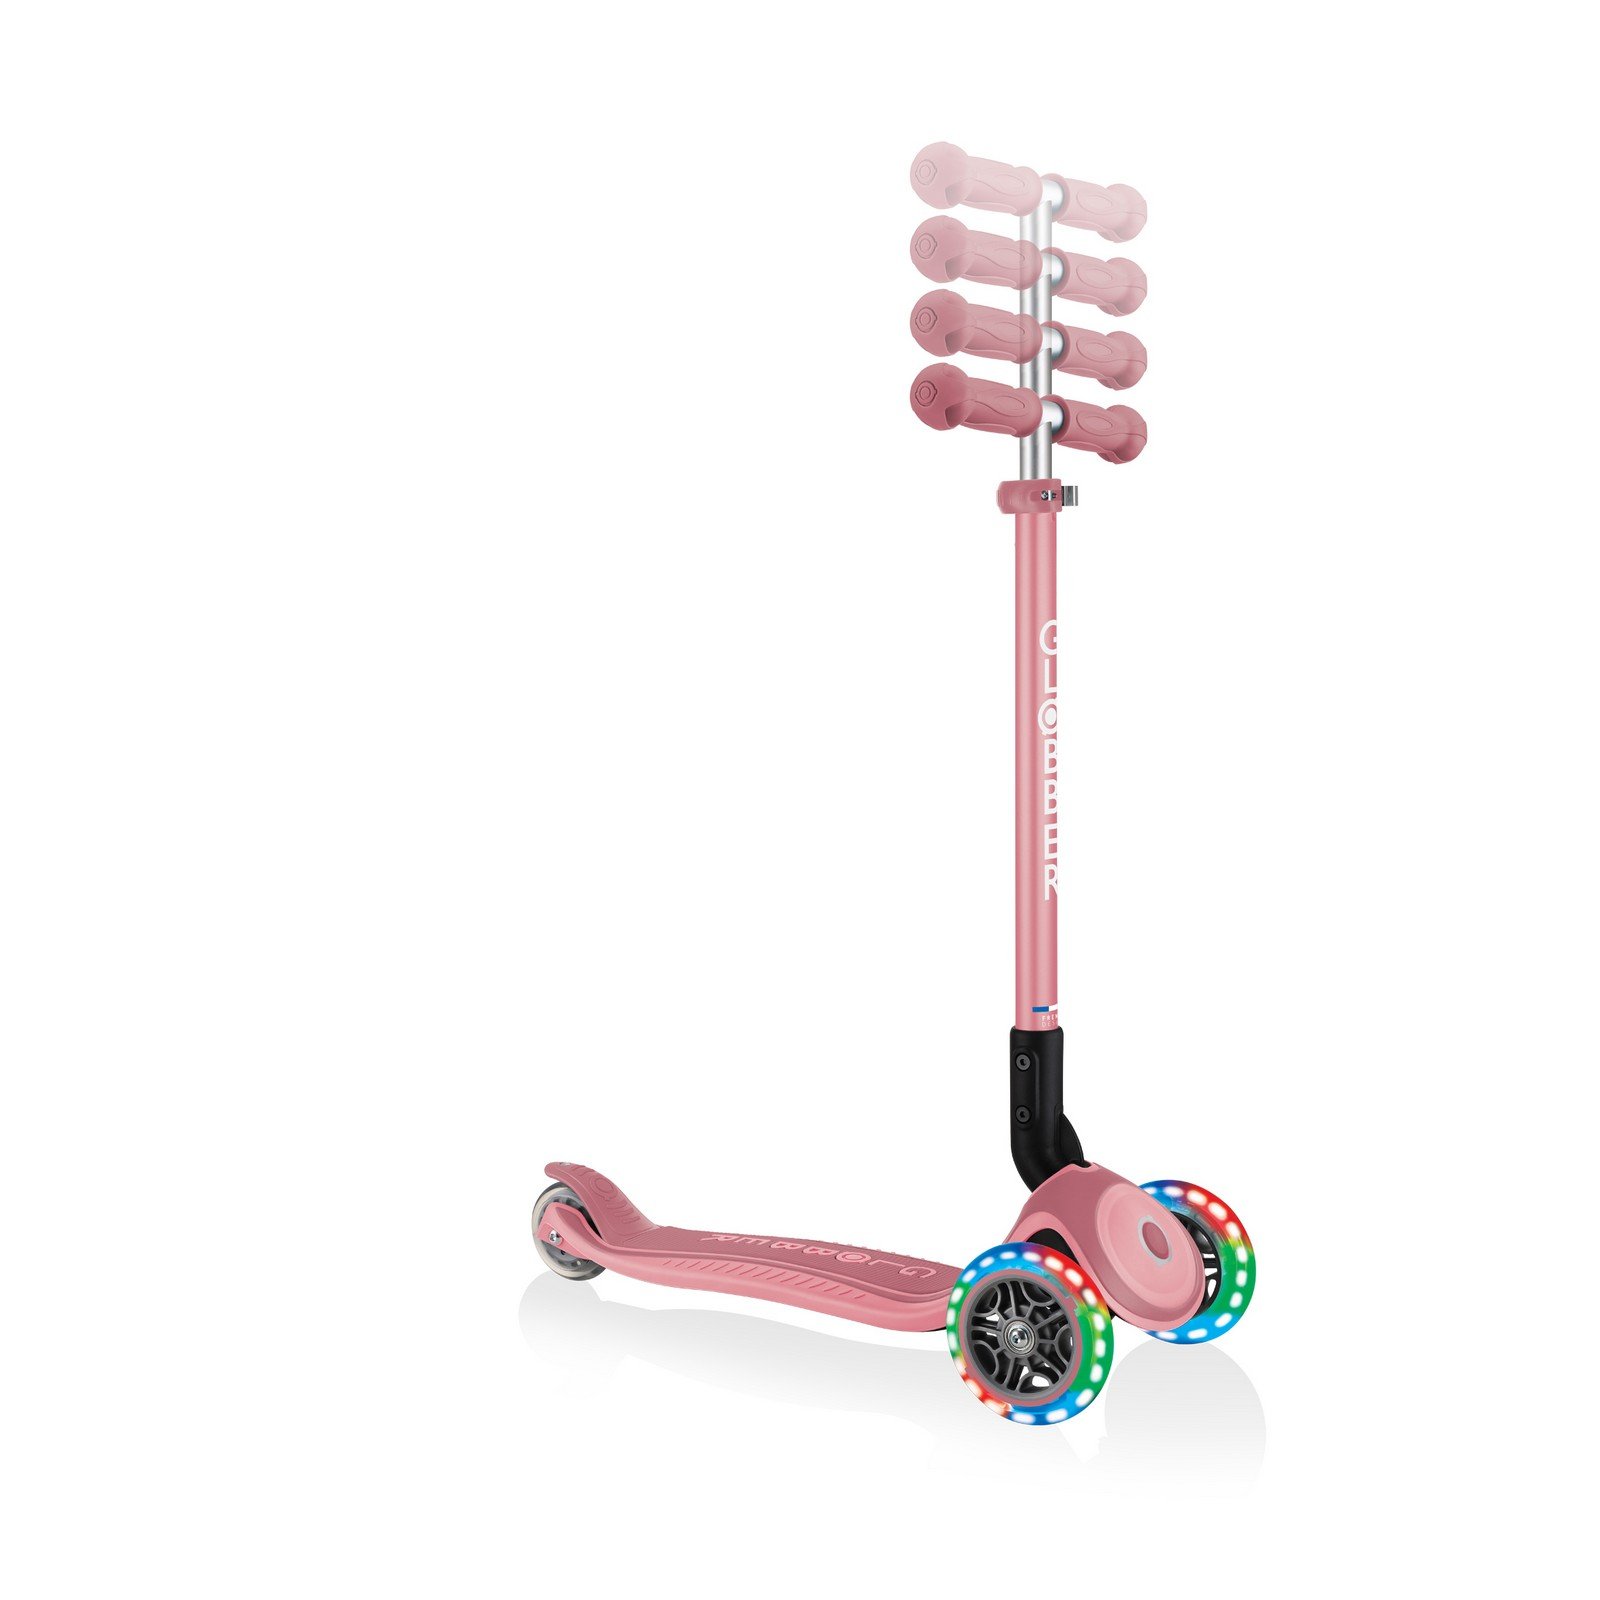 Самокат Globber Primo foldable plus lights, колеса с подсветкой, пастельно-розовый (439-210) - фото 6